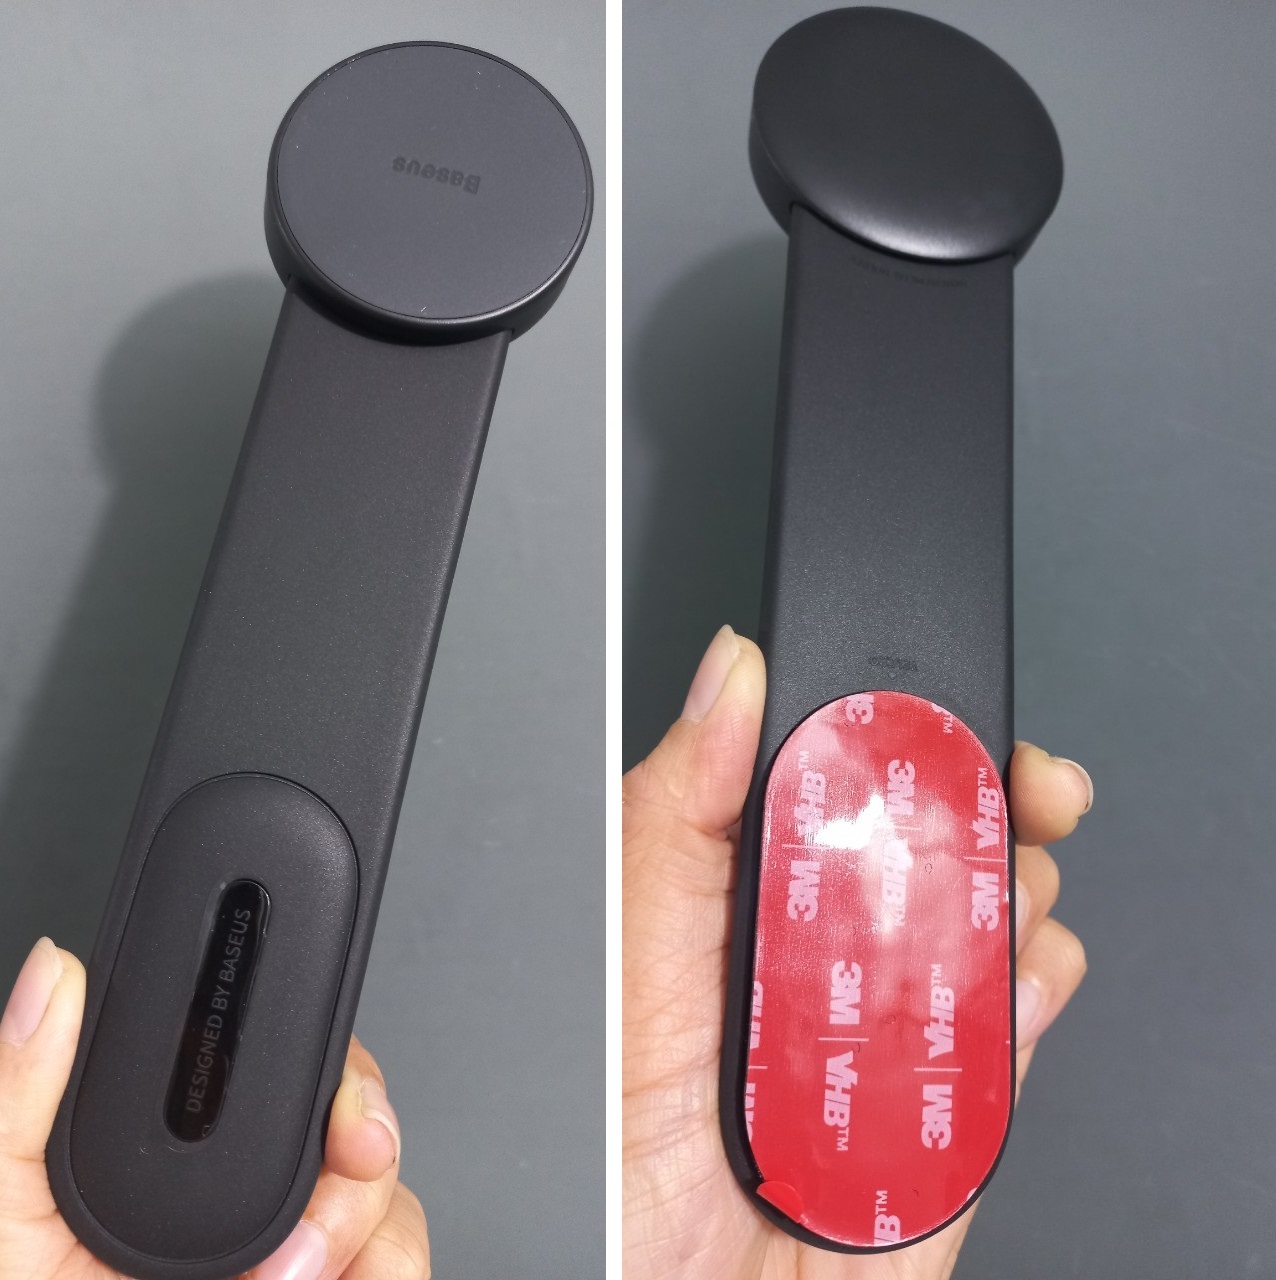 Giá đỡ nam châm  thanh hít điện thoại kiêm sạc không dây dán táp-lô có thể uốn cong Baseus C02 Magnetic holder BS-CM017 _ Hàng chính hãng